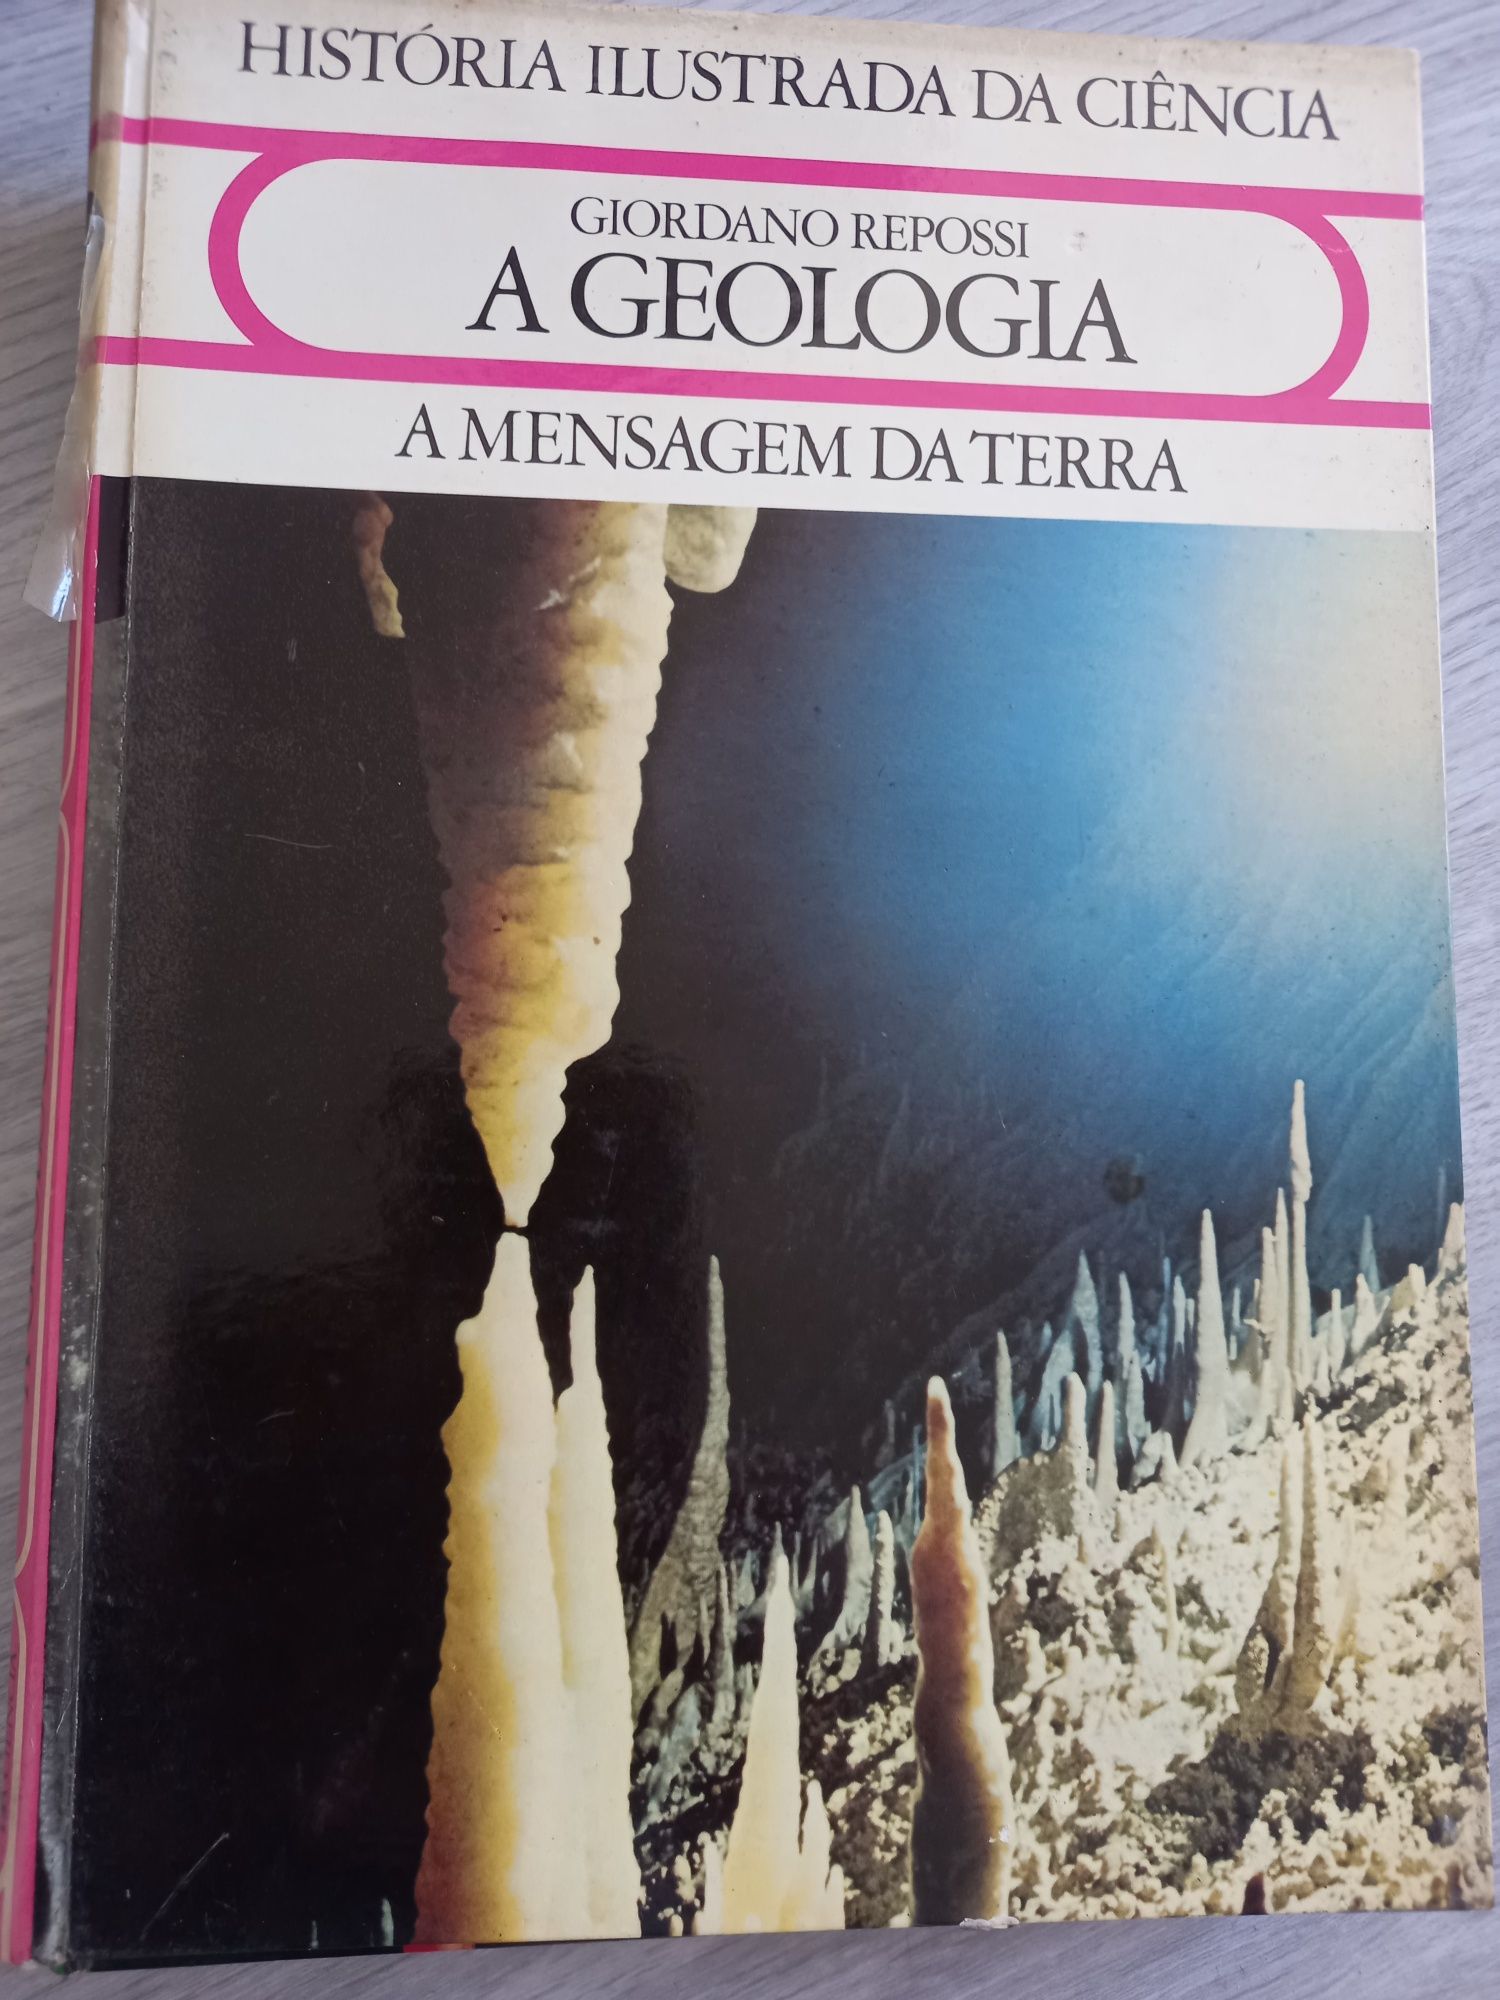 Livros. História Ilustrada da Ciência. Anos 80.